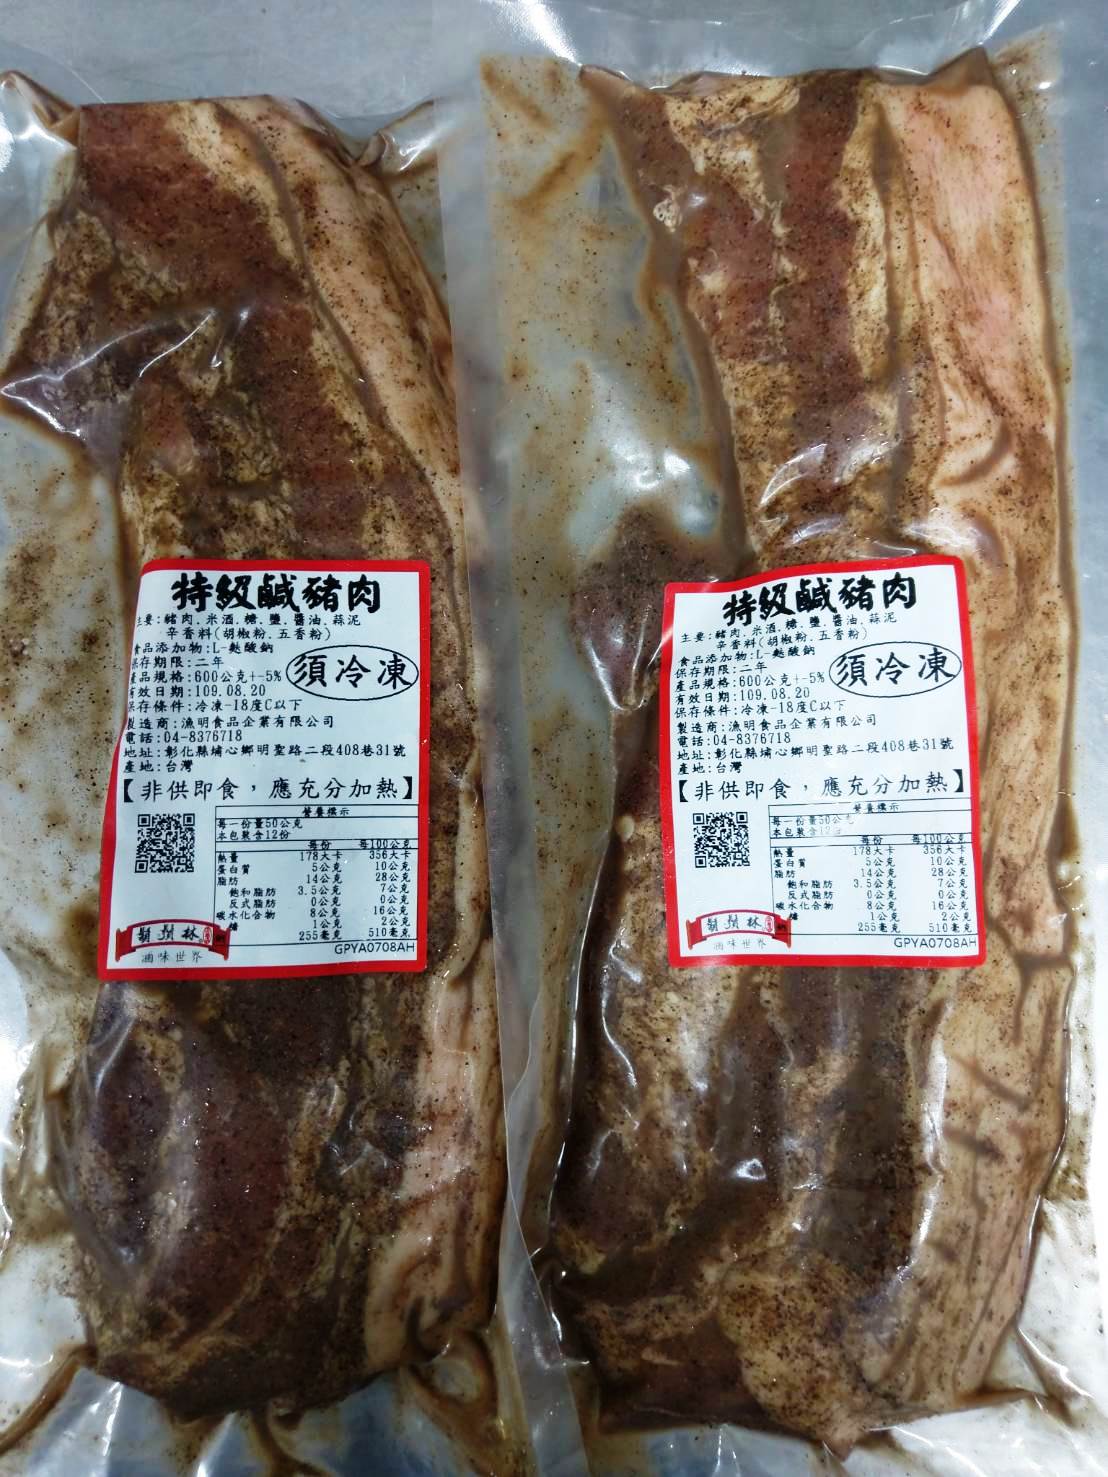 特級鹹豬肉(正港台灣豬)600g$260